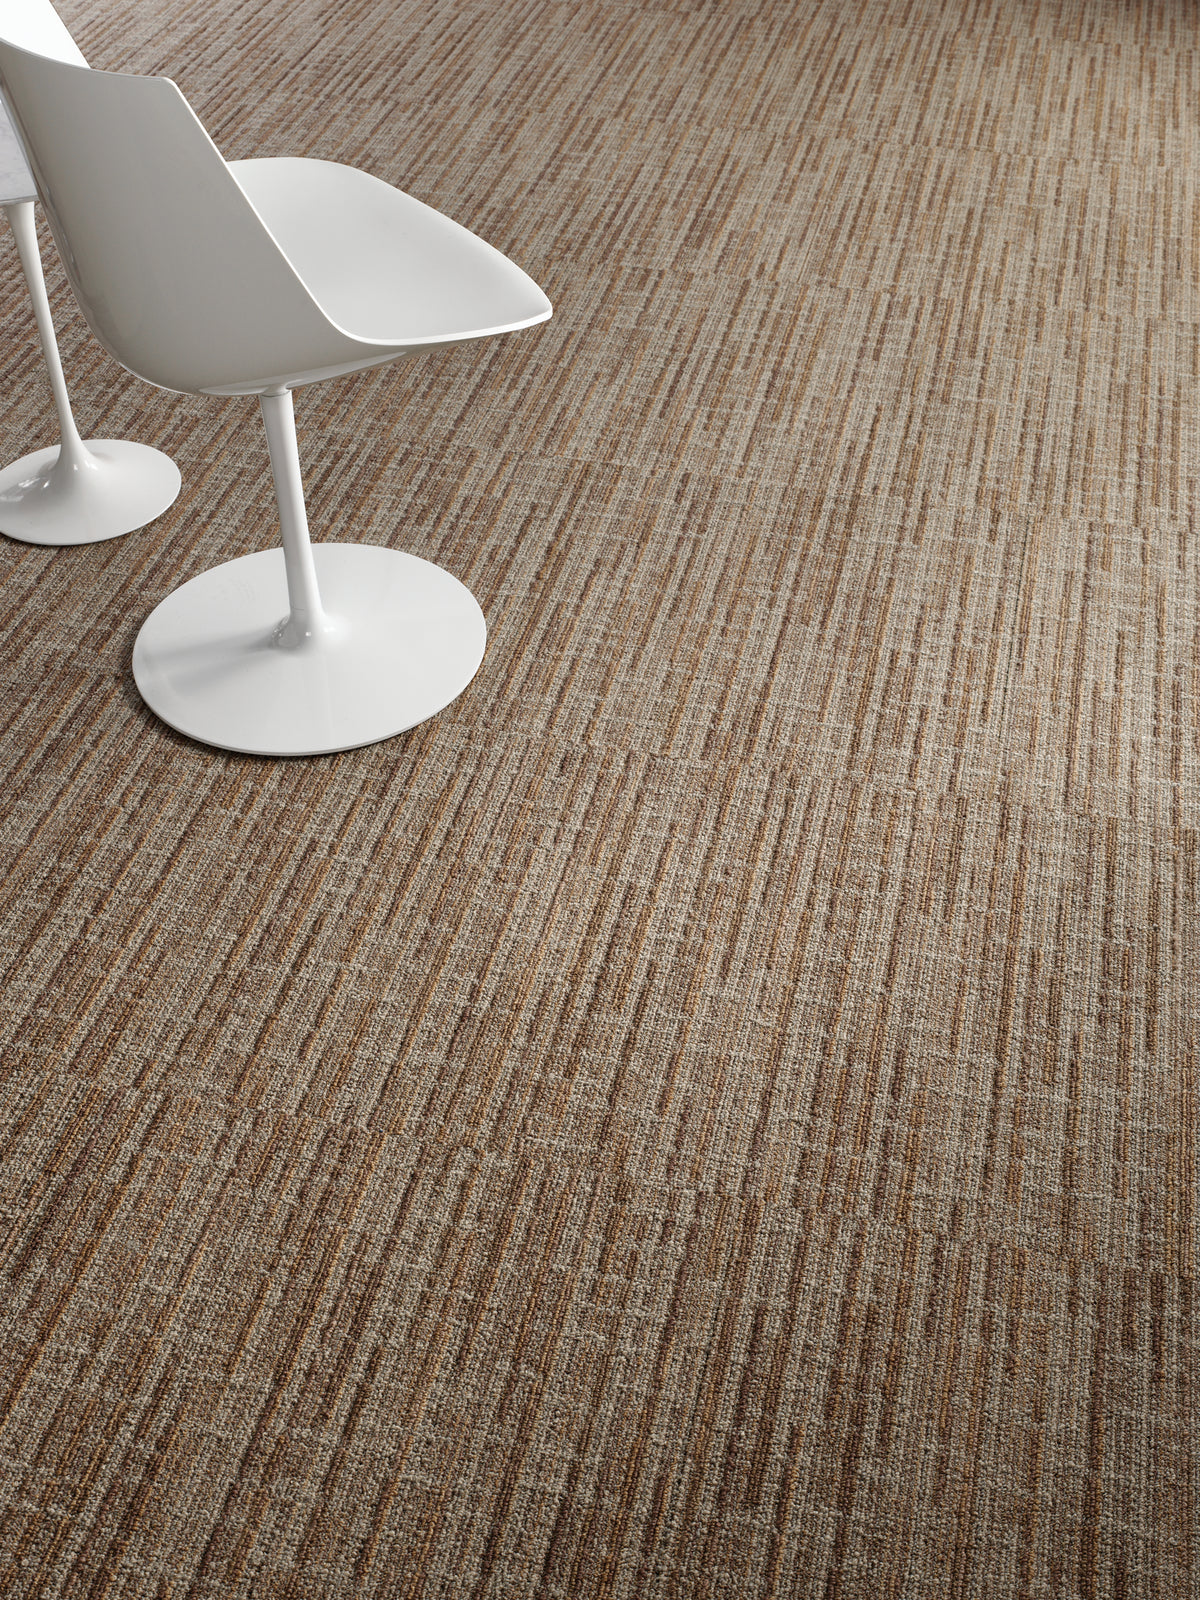 Mohawk Group - Mind Over Matter - Forward Vision - Commercial Carpet Tile - Workmanship